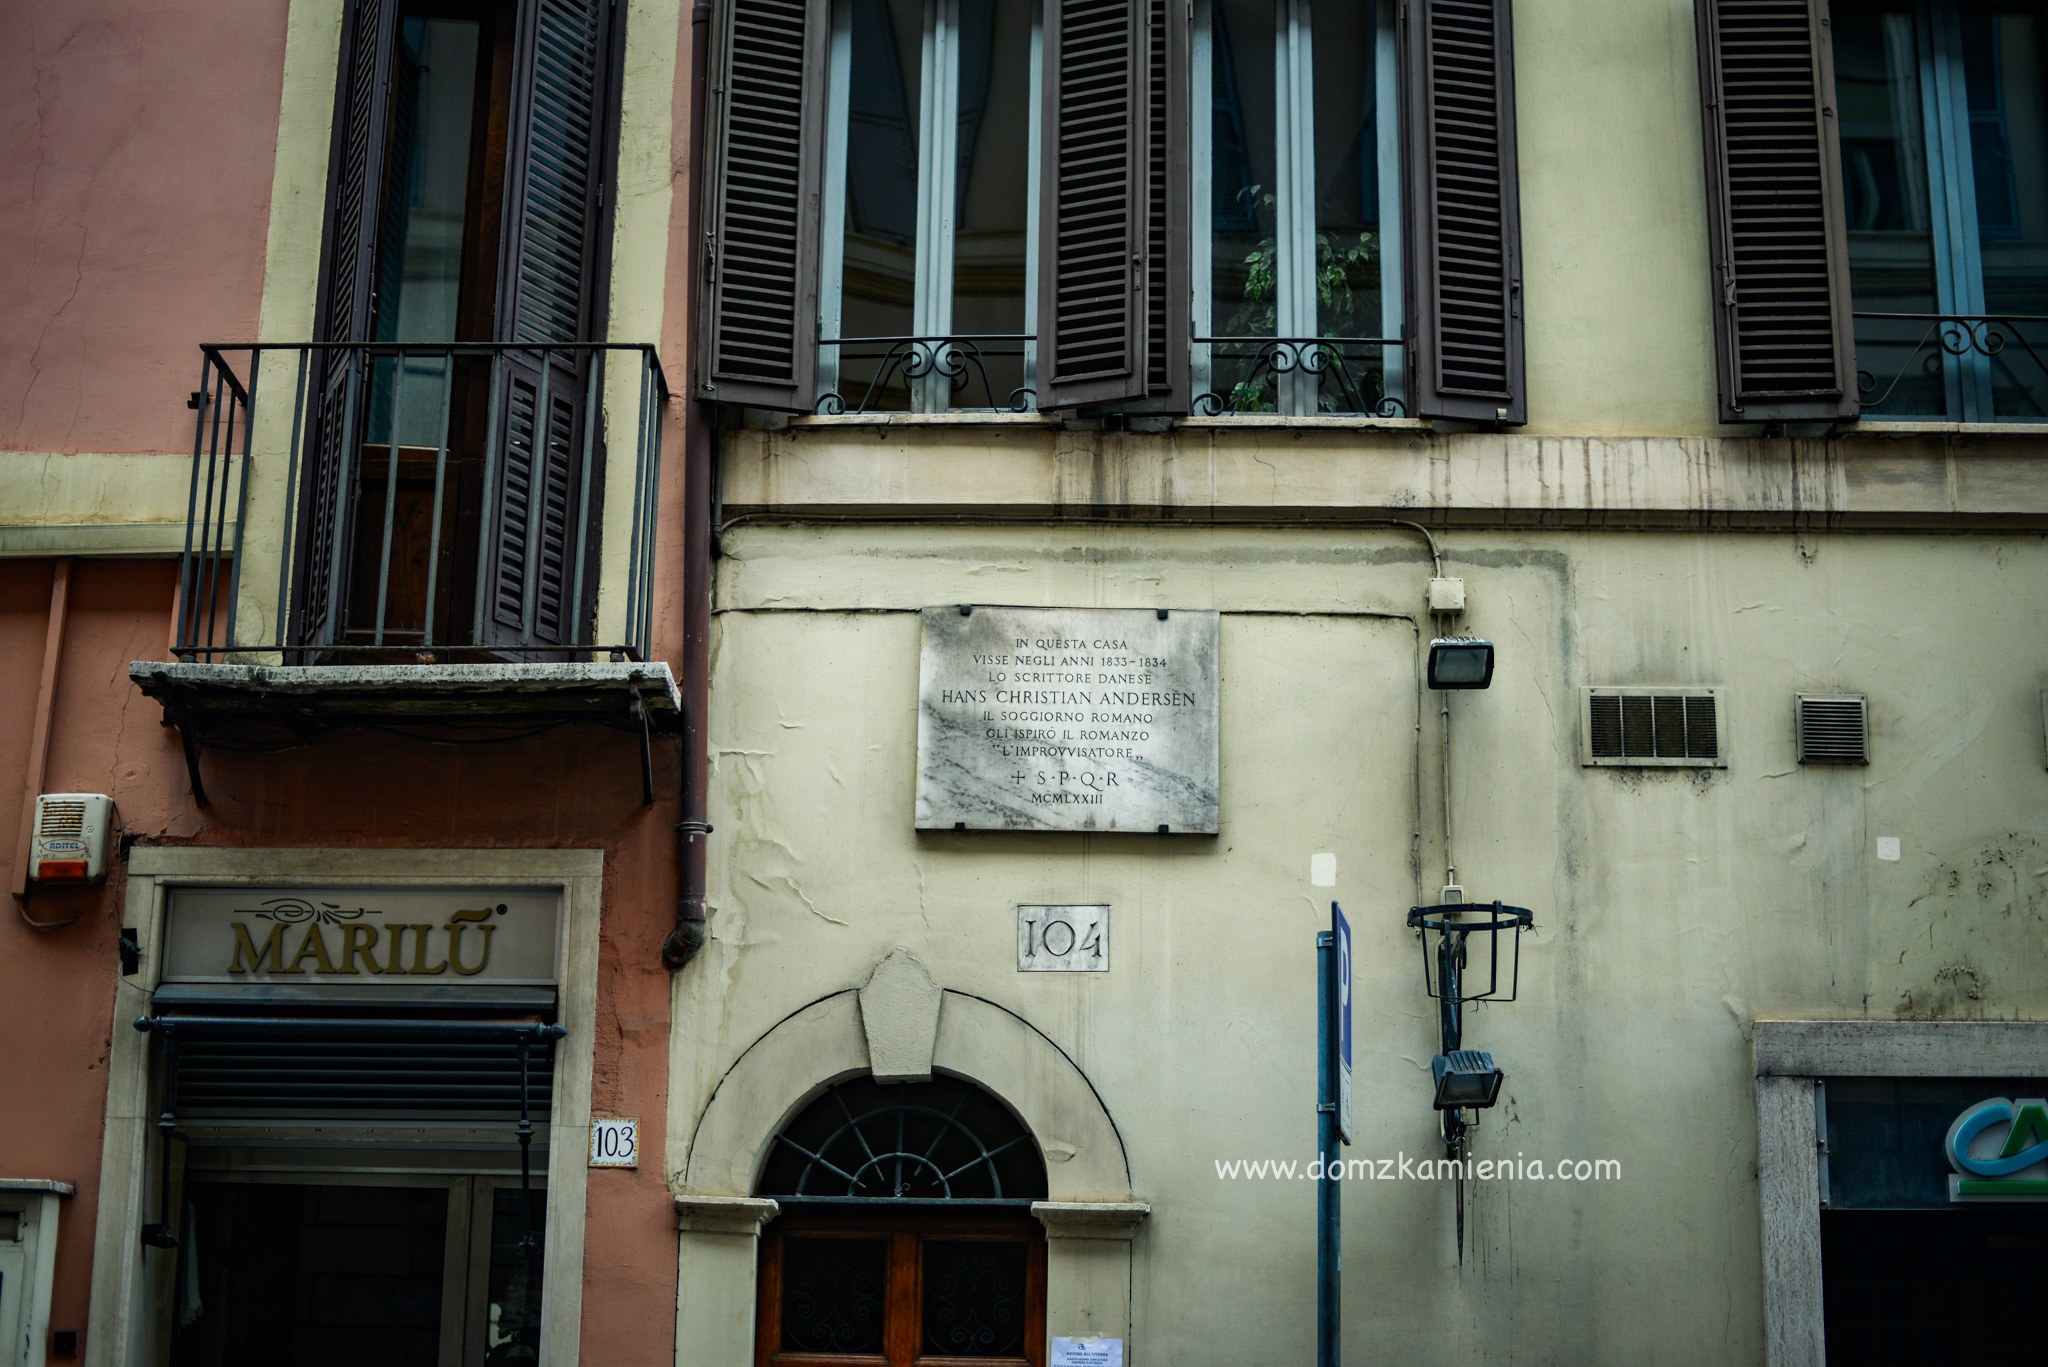 Rzym Dom z Kamienia blog o życiu we Włoszech